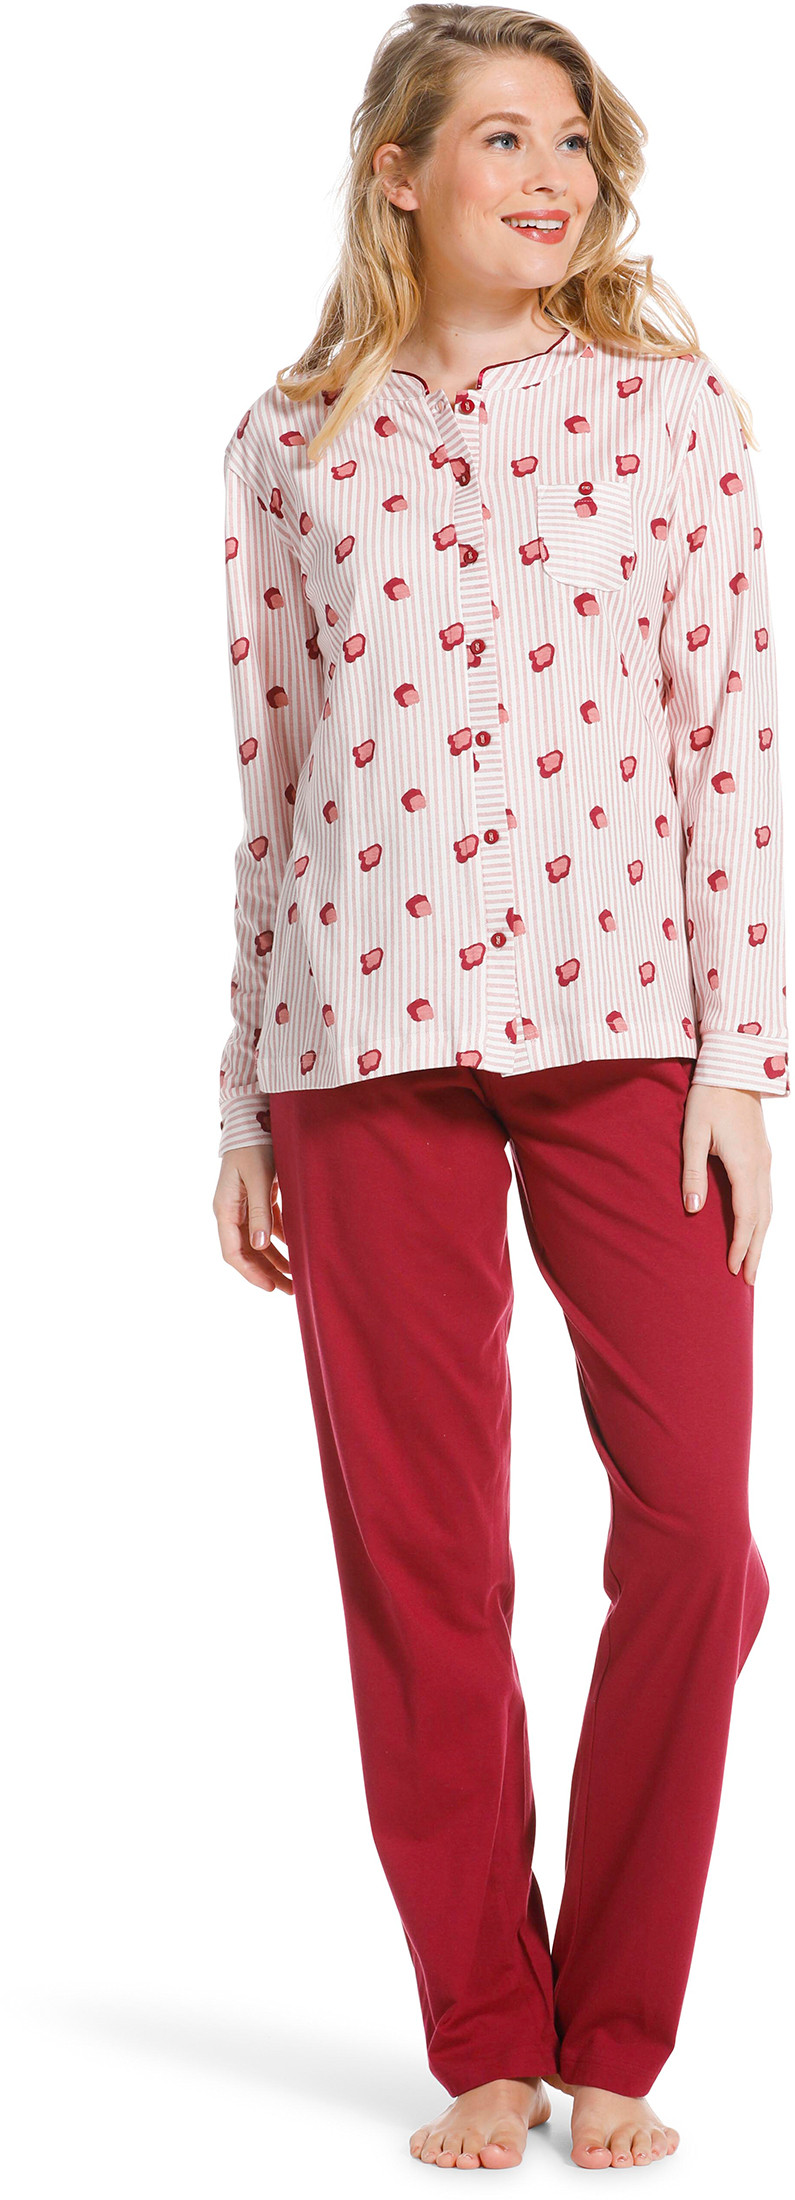 Pastunette doorknoop dames pyjama 20222-104-6-40